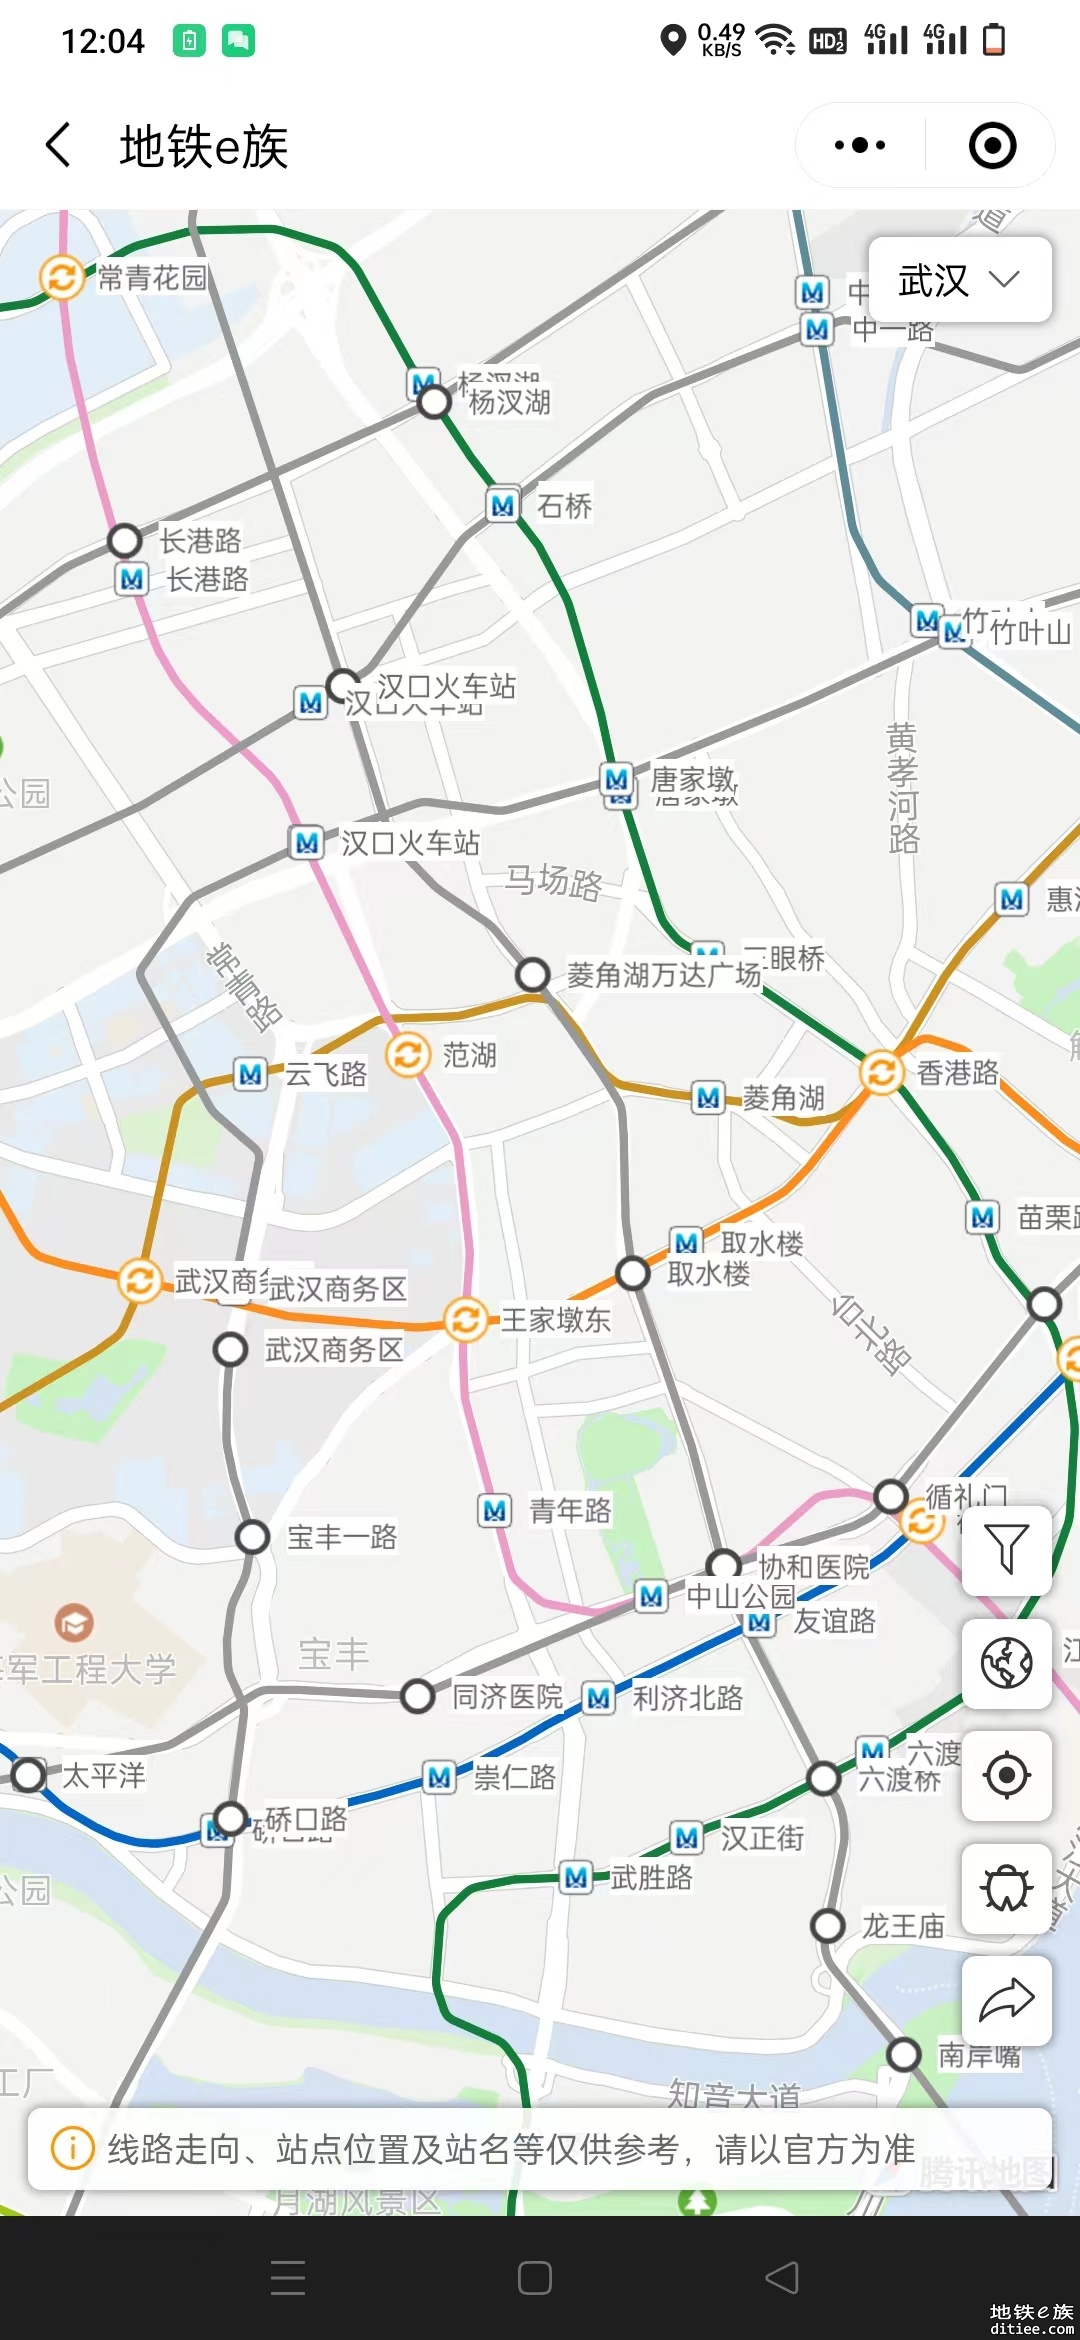 欢迎体验武汉地铁线路图地图版